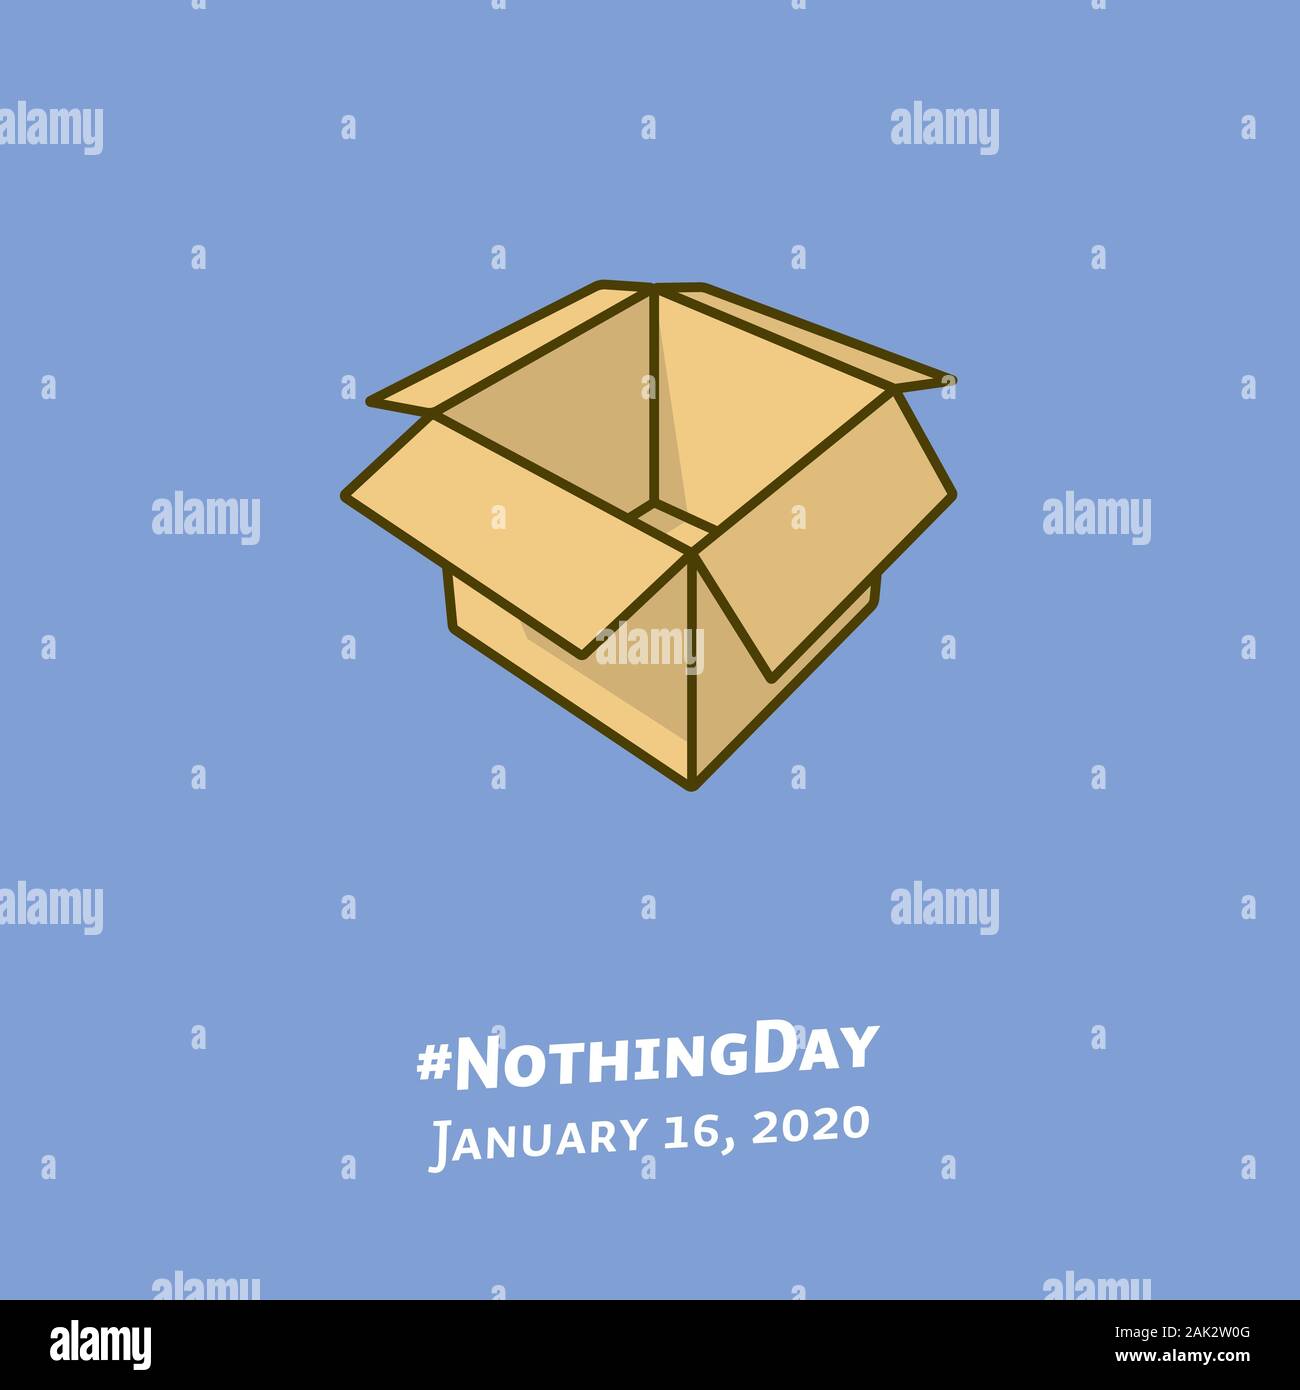 Ilustración de la caja de cartón vacía para #NothingDay el 16 de enero. Símbolo de vectores de color vacío. Ilustración del Vector